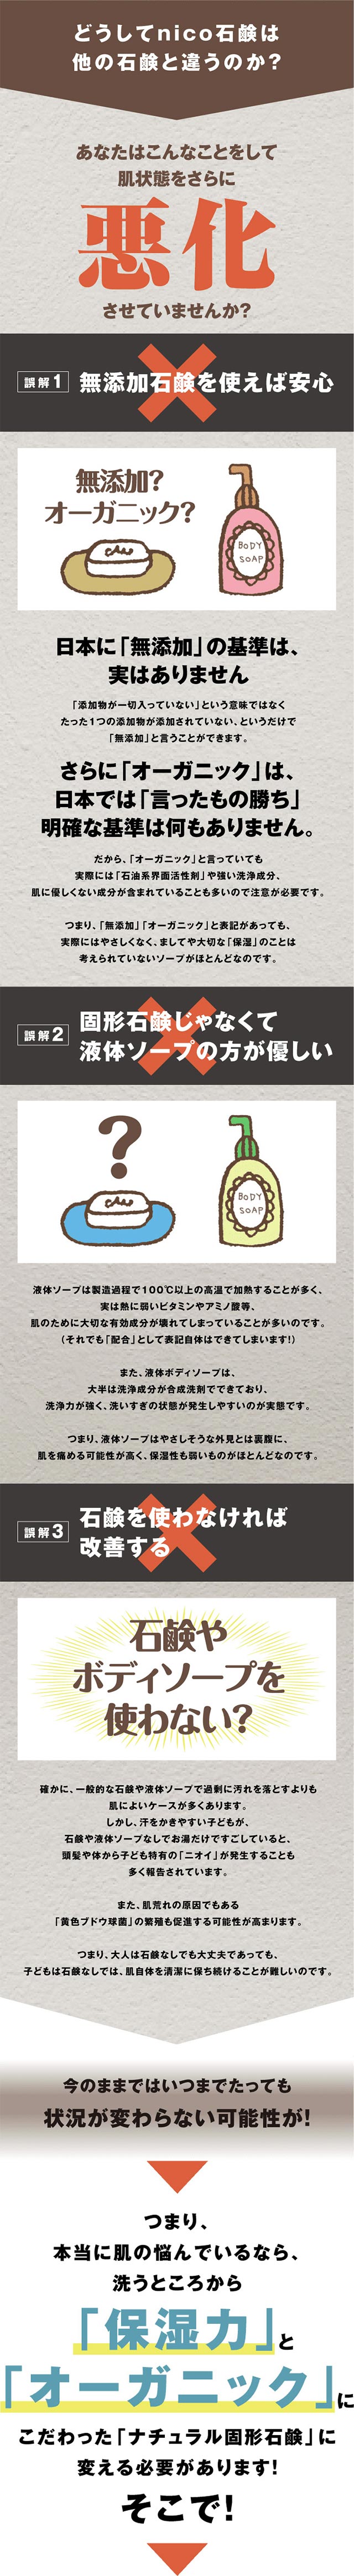 WEB限定 nico石鹸 ニコ石鹸 soap